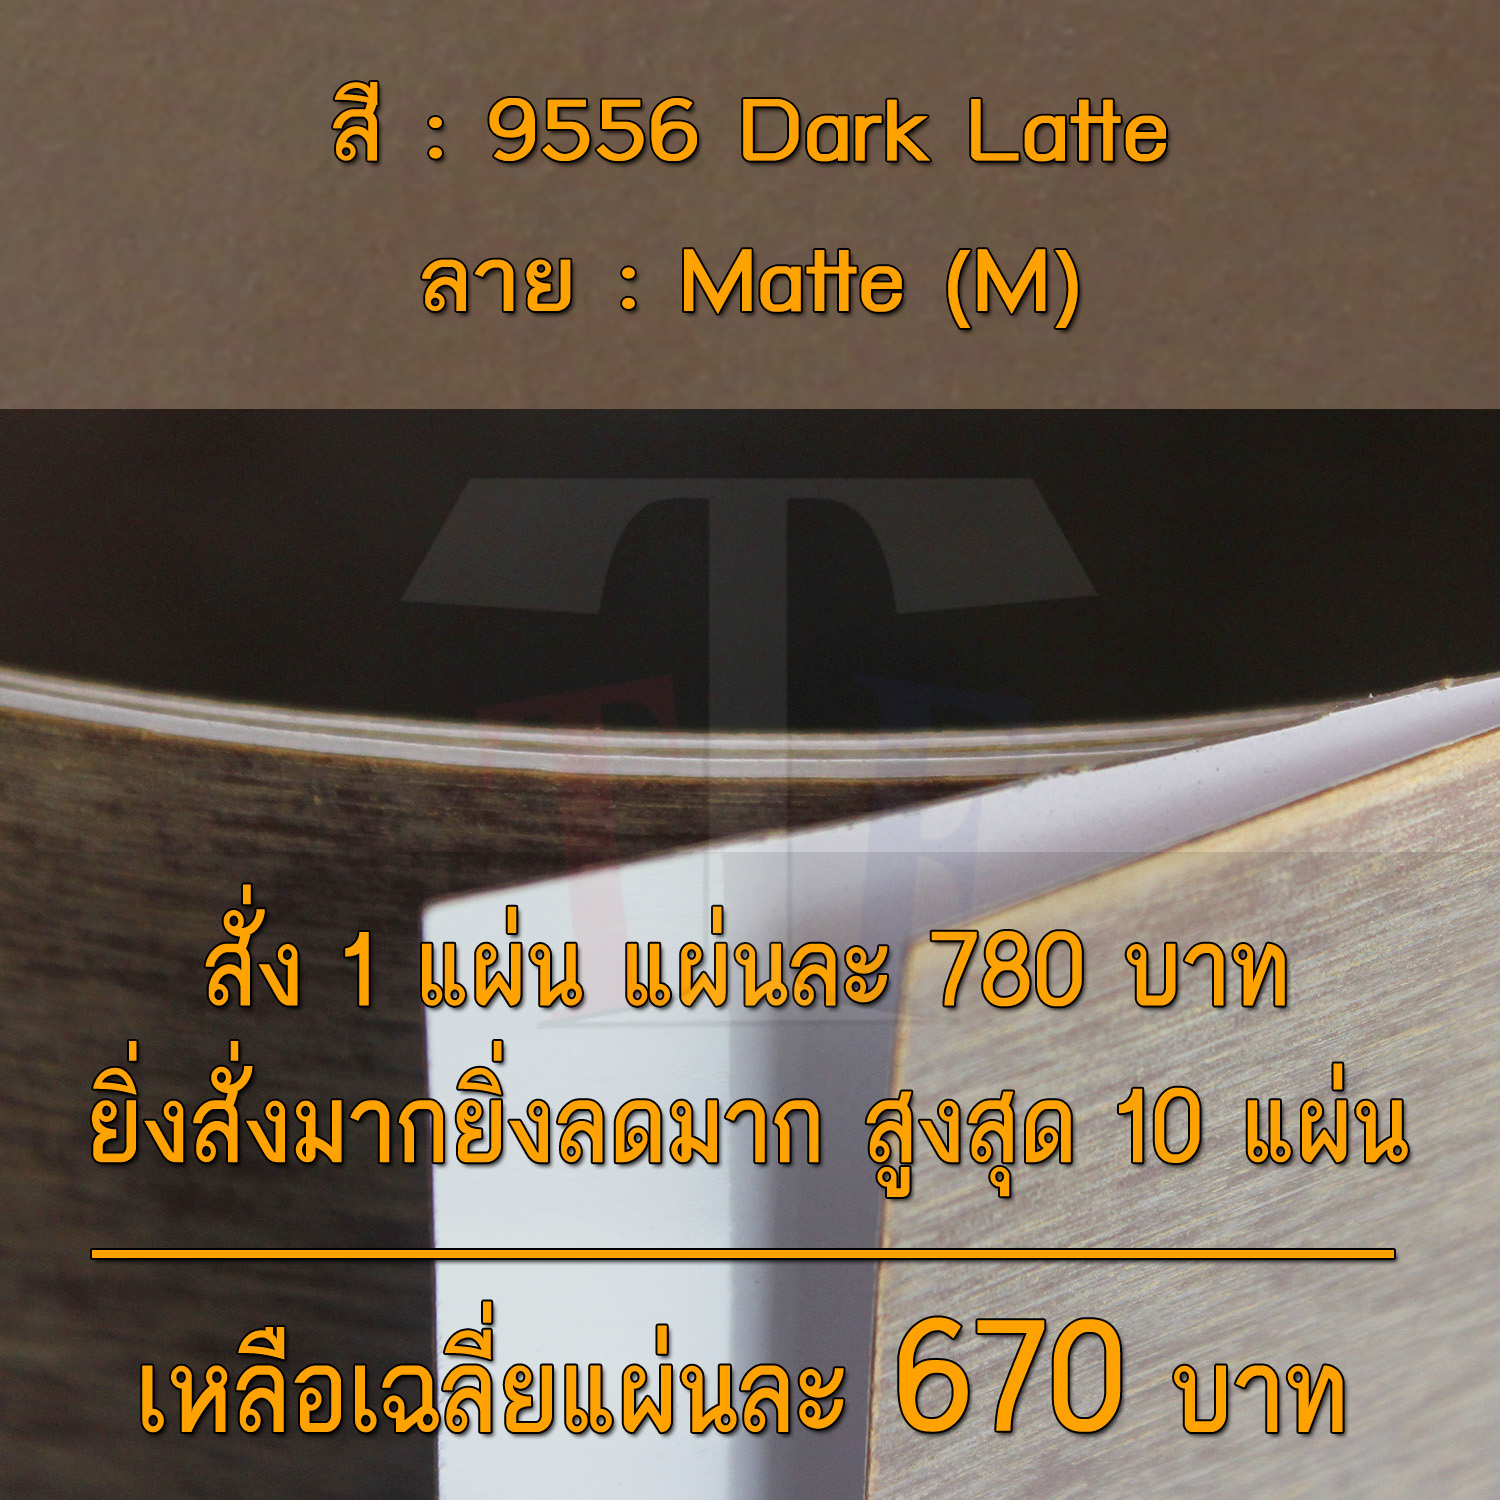 แผ่นโฟเมก้า แผ่นลามิเนต ยี่ห้อ TD Board สีน้ำตาล รหัส 9556 Dark Latte พื้นผิวลาย Matte (M) ขนาด 1220 x 2440 มม. หนา 0.70 มม. ใช้สำหรับงานตกแต่งภายใน งานปิดผิวเฟอร์นิเจอร์ ผนัง และอื่นๆ เพื่อเพิ่มความสวยงาม formica laminate 9556M